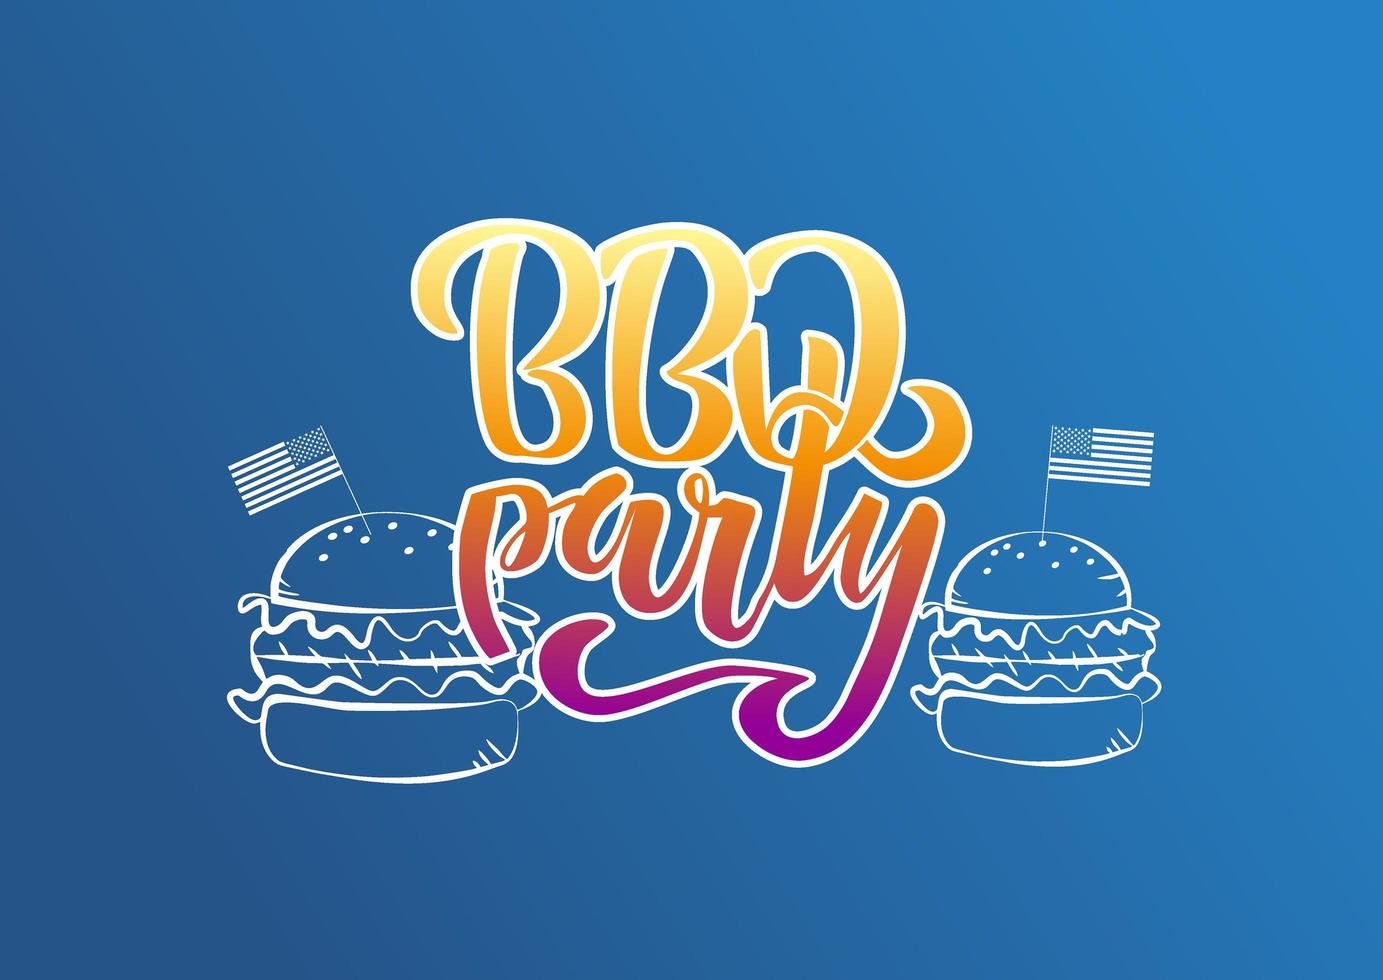 4 luglio bbq party lettering invito al barbecue del giorno dell'indipendenza americana con decorazioni hamburger e bandiere su sfondo blu. illustrazione disegnata a mano di vettore. vettore